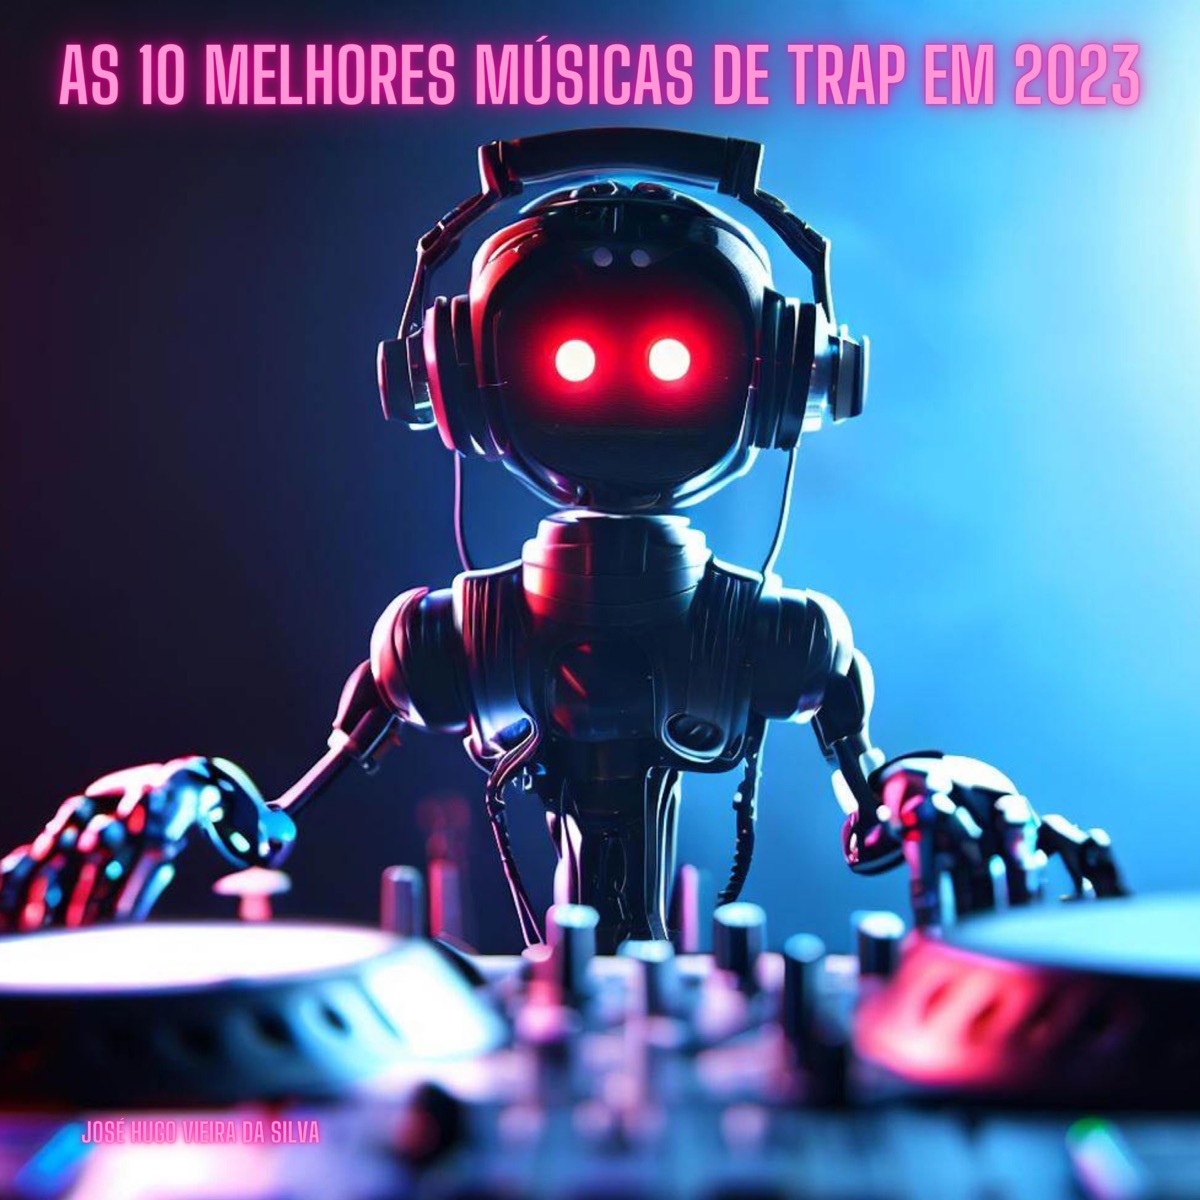 As 10 melhores músicas de trap em 2023 - Single - Album by José